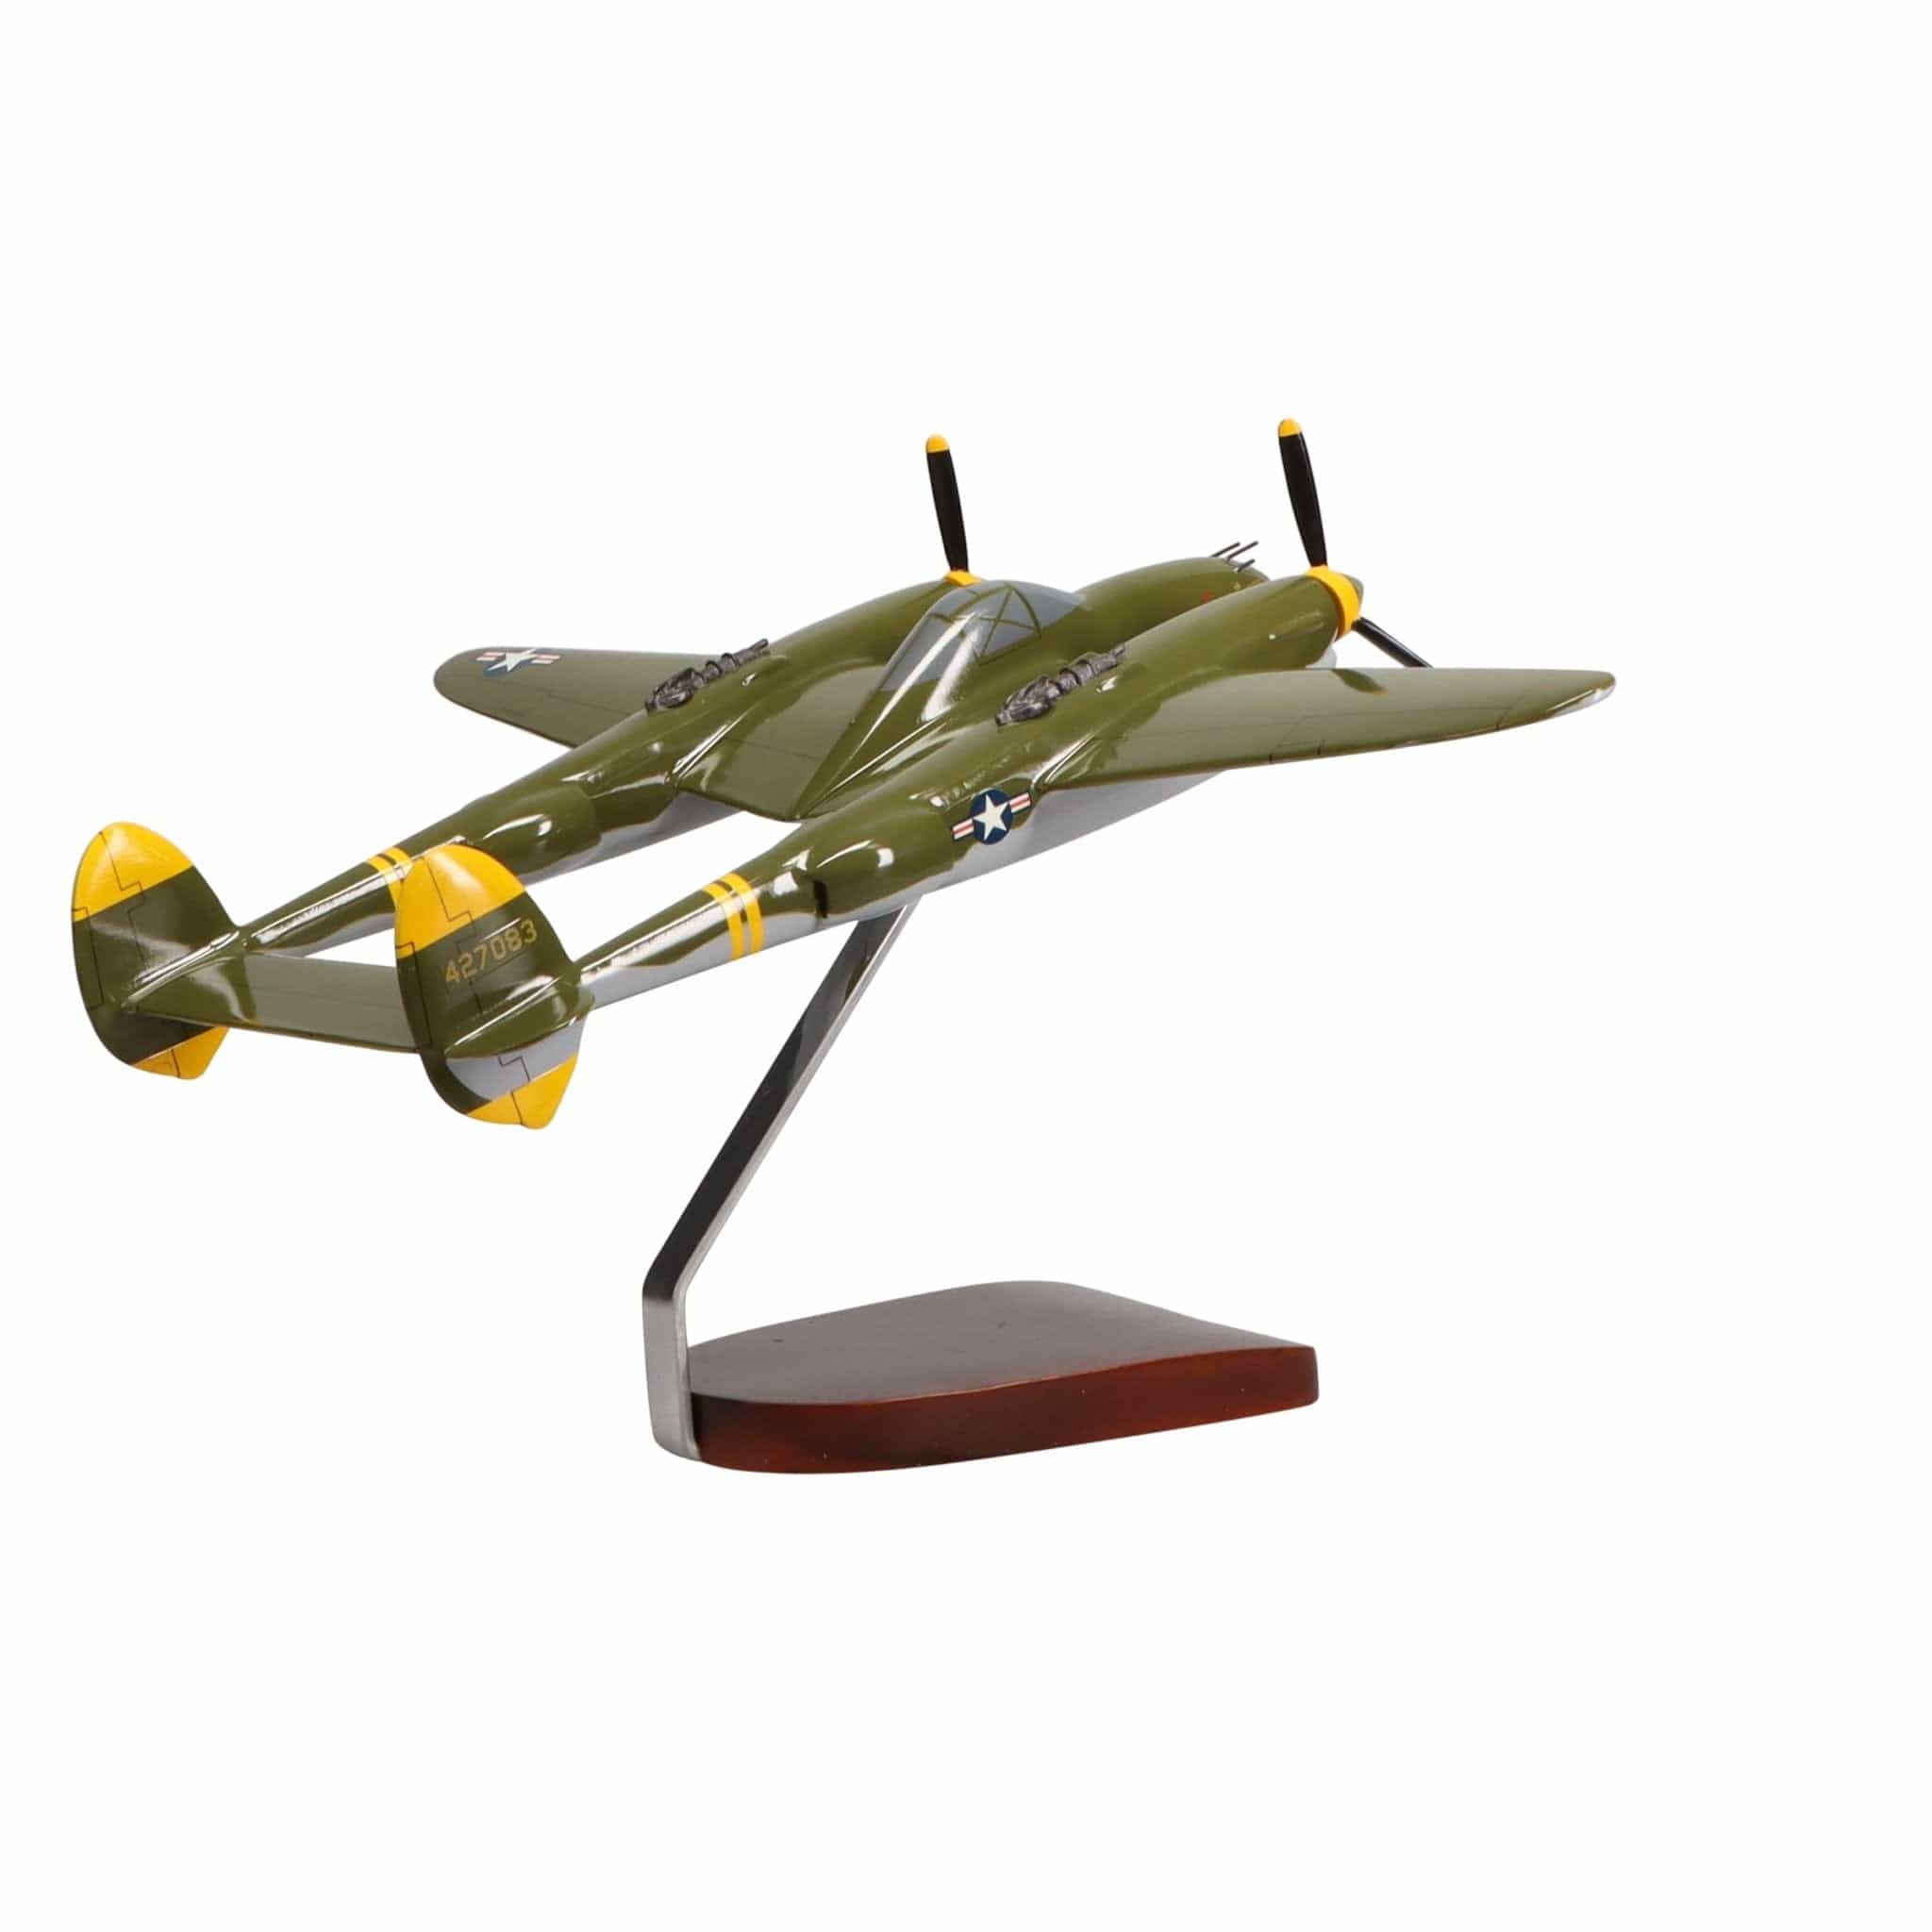 Lockheed P-38 Lightning® (Camoflage) Large Mahogany Model